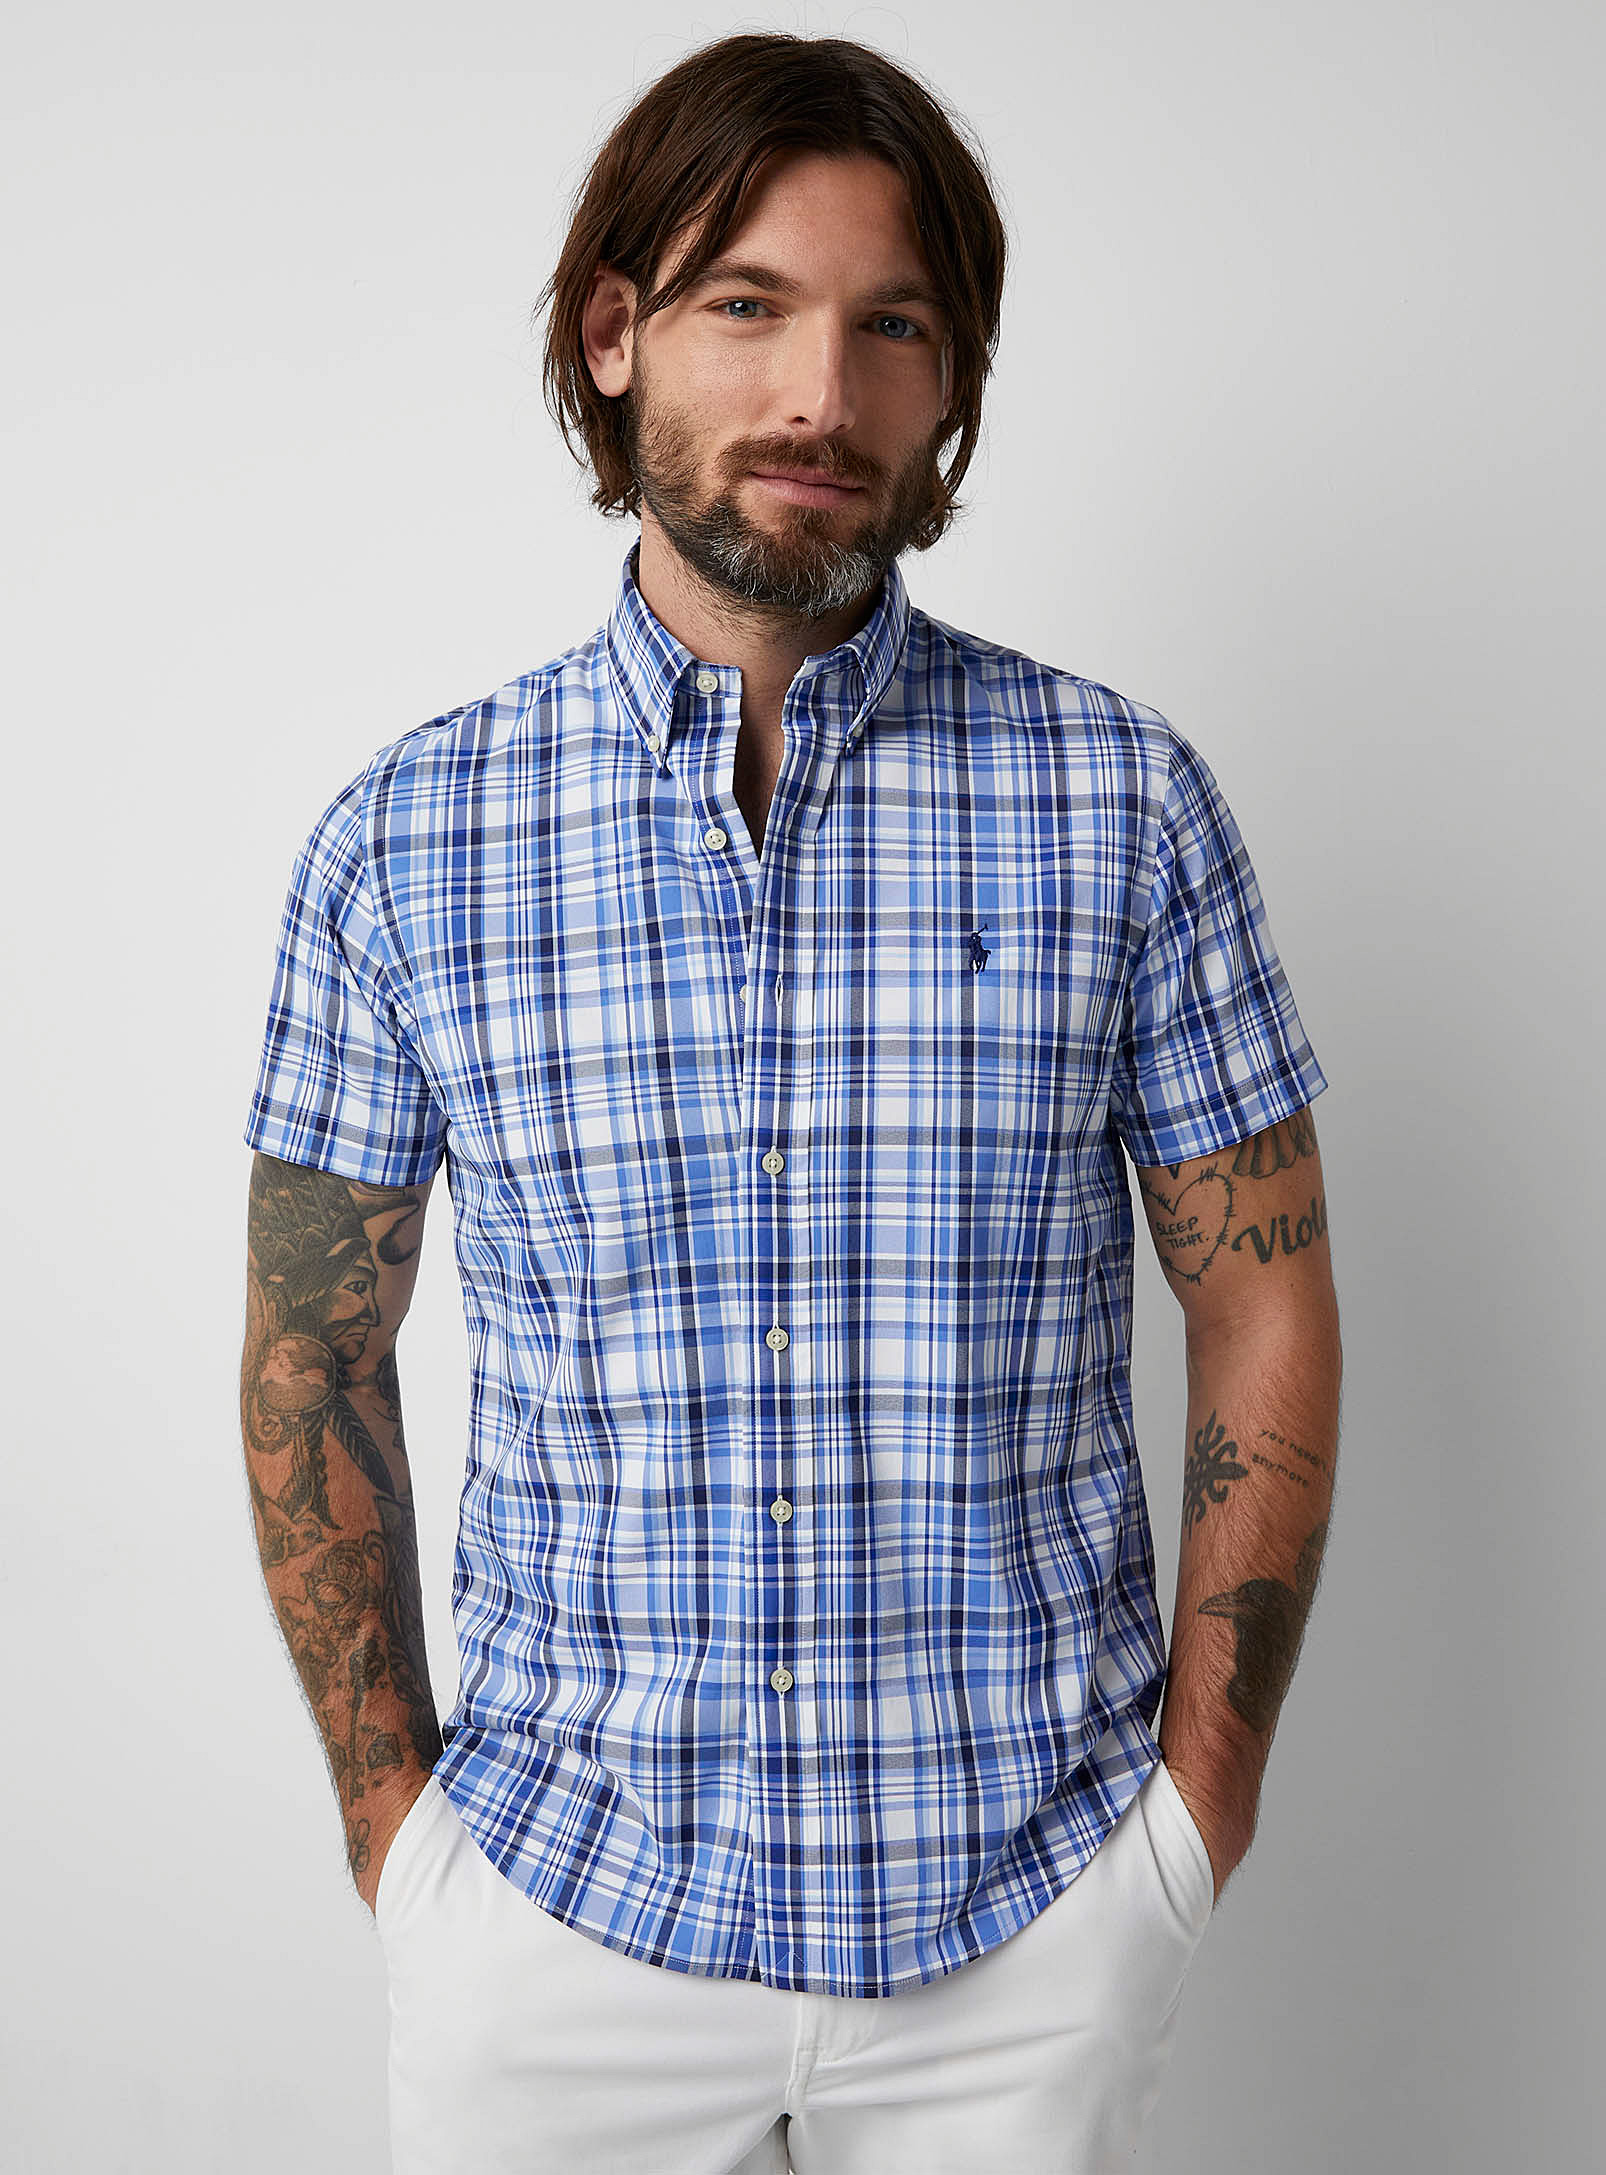 Polo Ralph Lauren - La chemise microfibre carreaux bleus